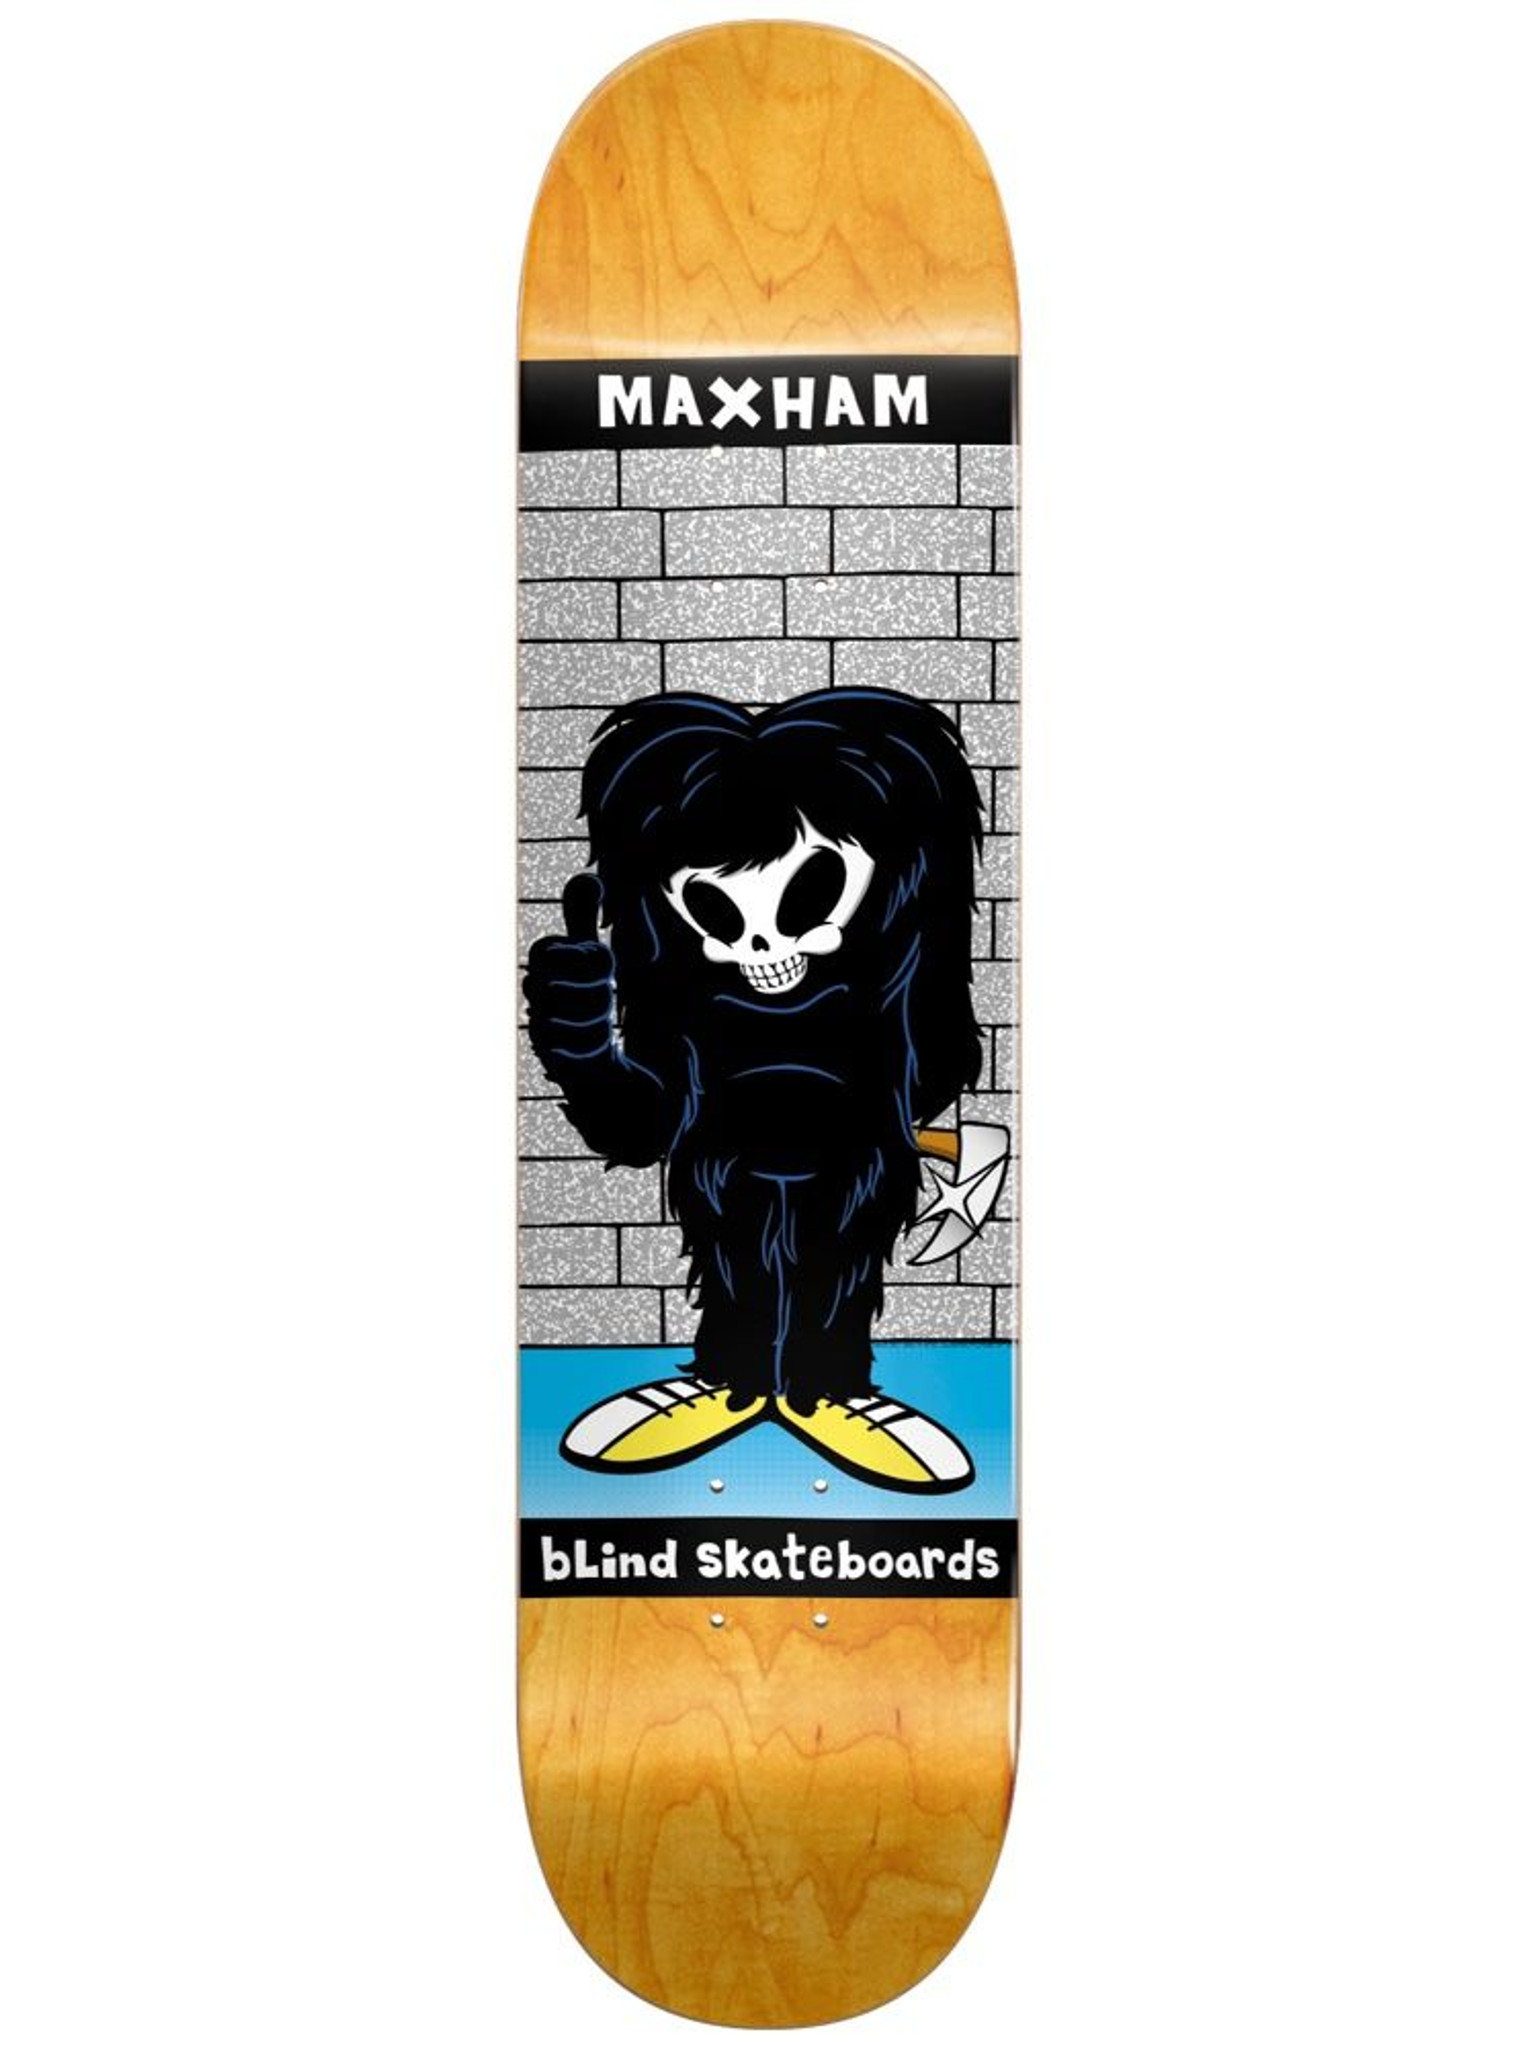 Blind Skateboards Maxham Reaper Impersonator Skateboard Deck 8.375"